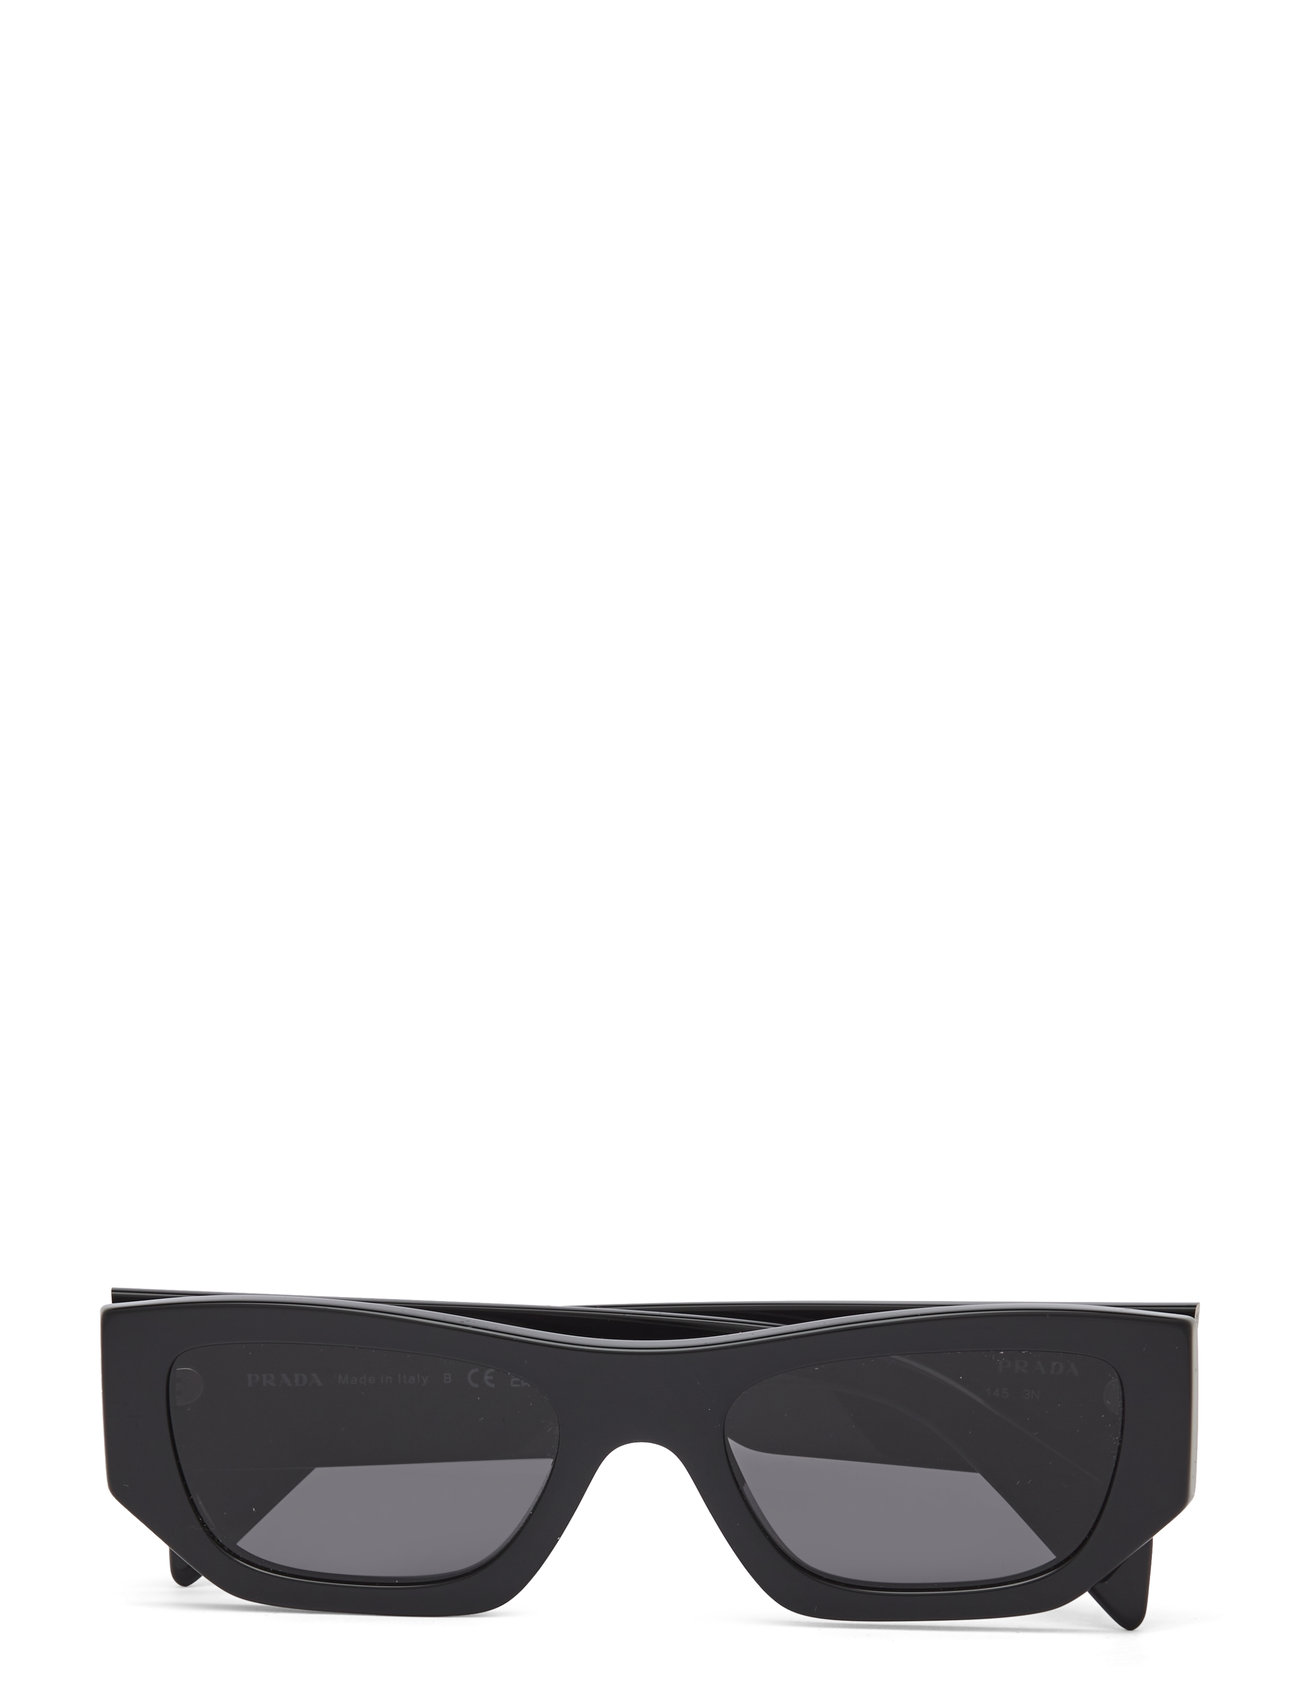 0Pr A01S 53 16K08Z Accessories Sunglasses D-frame- Wayfarer Sunglasses Black Prada Sunglasses